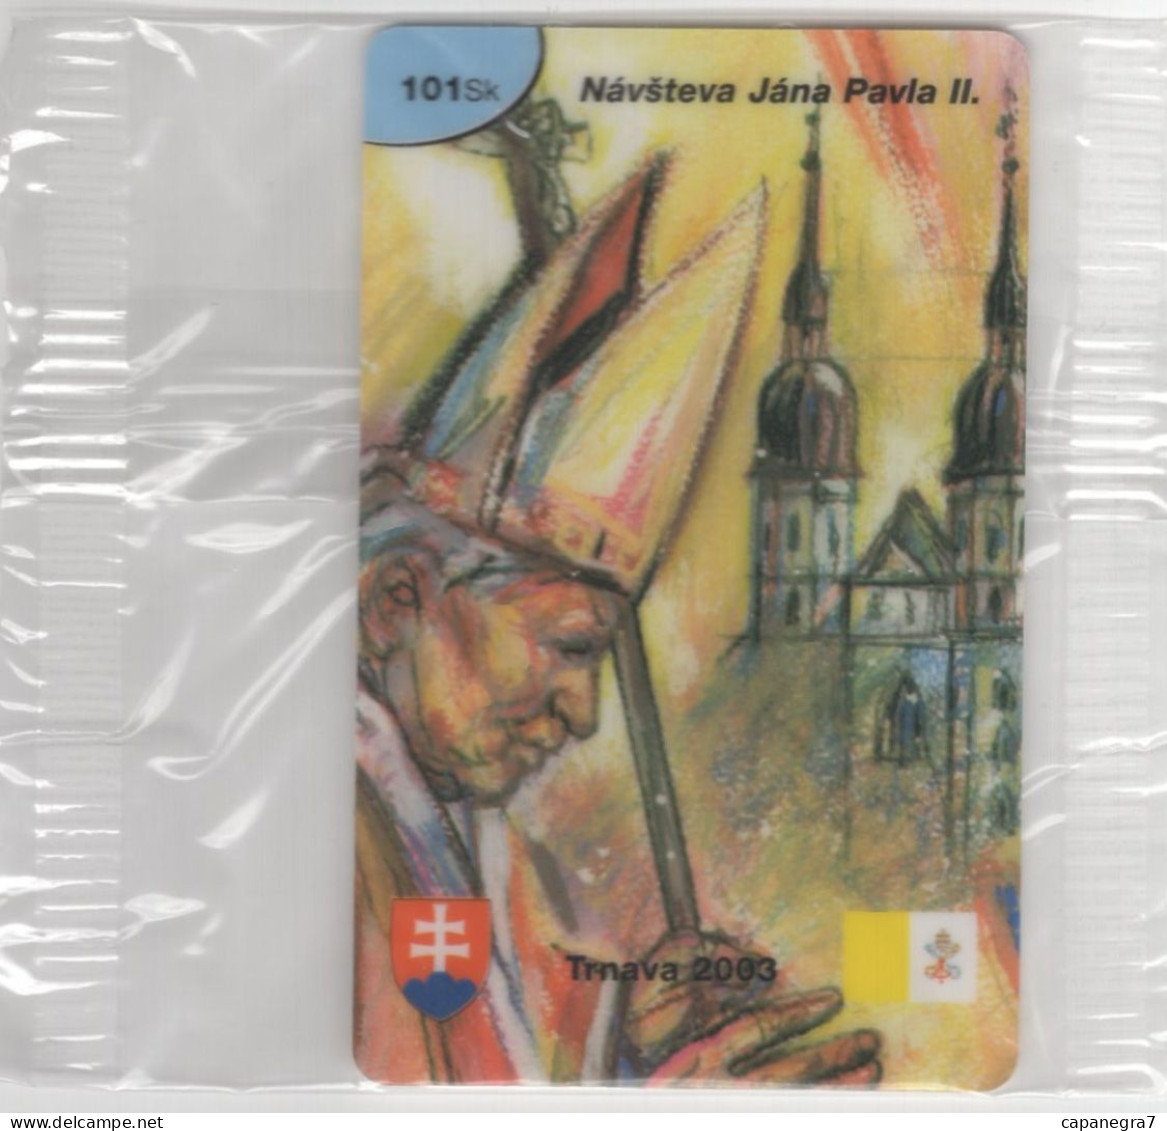 Pope John Paulu II. - Trnava 2003, Prepaid Calling Card, 101 Sk., 1.250 Pc., GlobalIPhone, Slovakia, Mint, Packed - Slovacchia